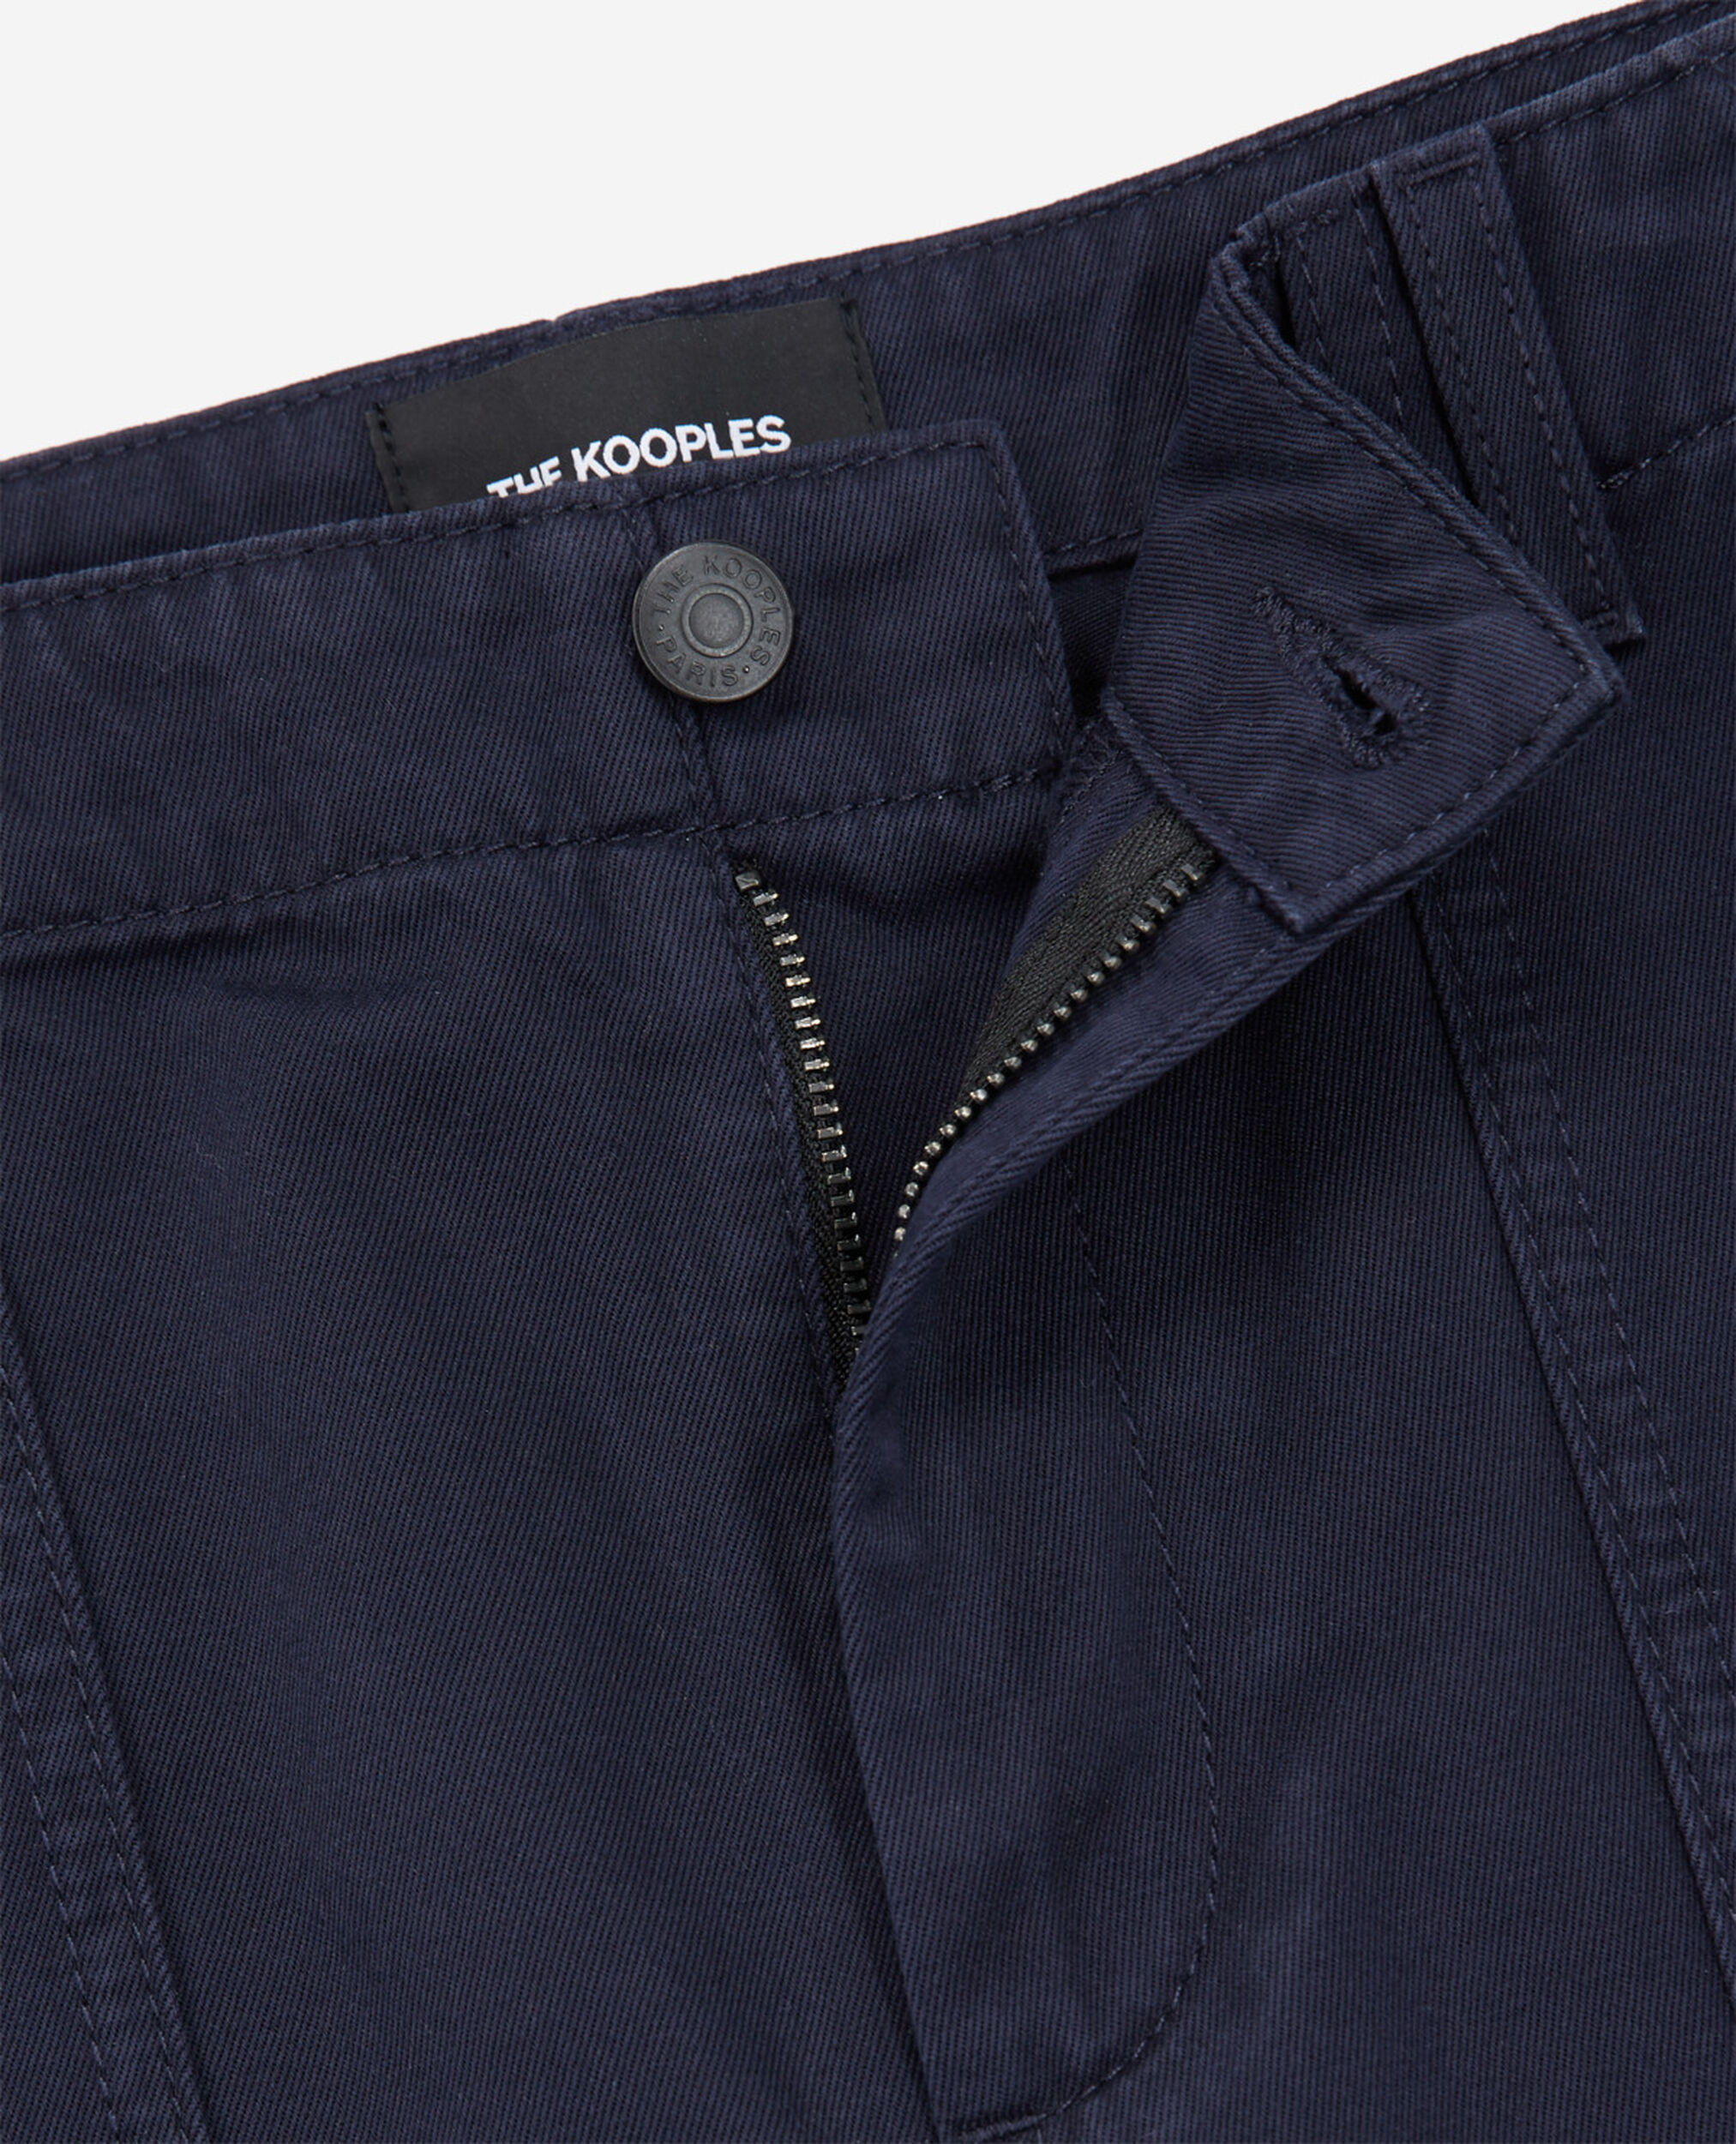 Short azul marino algodón largo cuatro bolsillos, NAVY, hi-res image number null